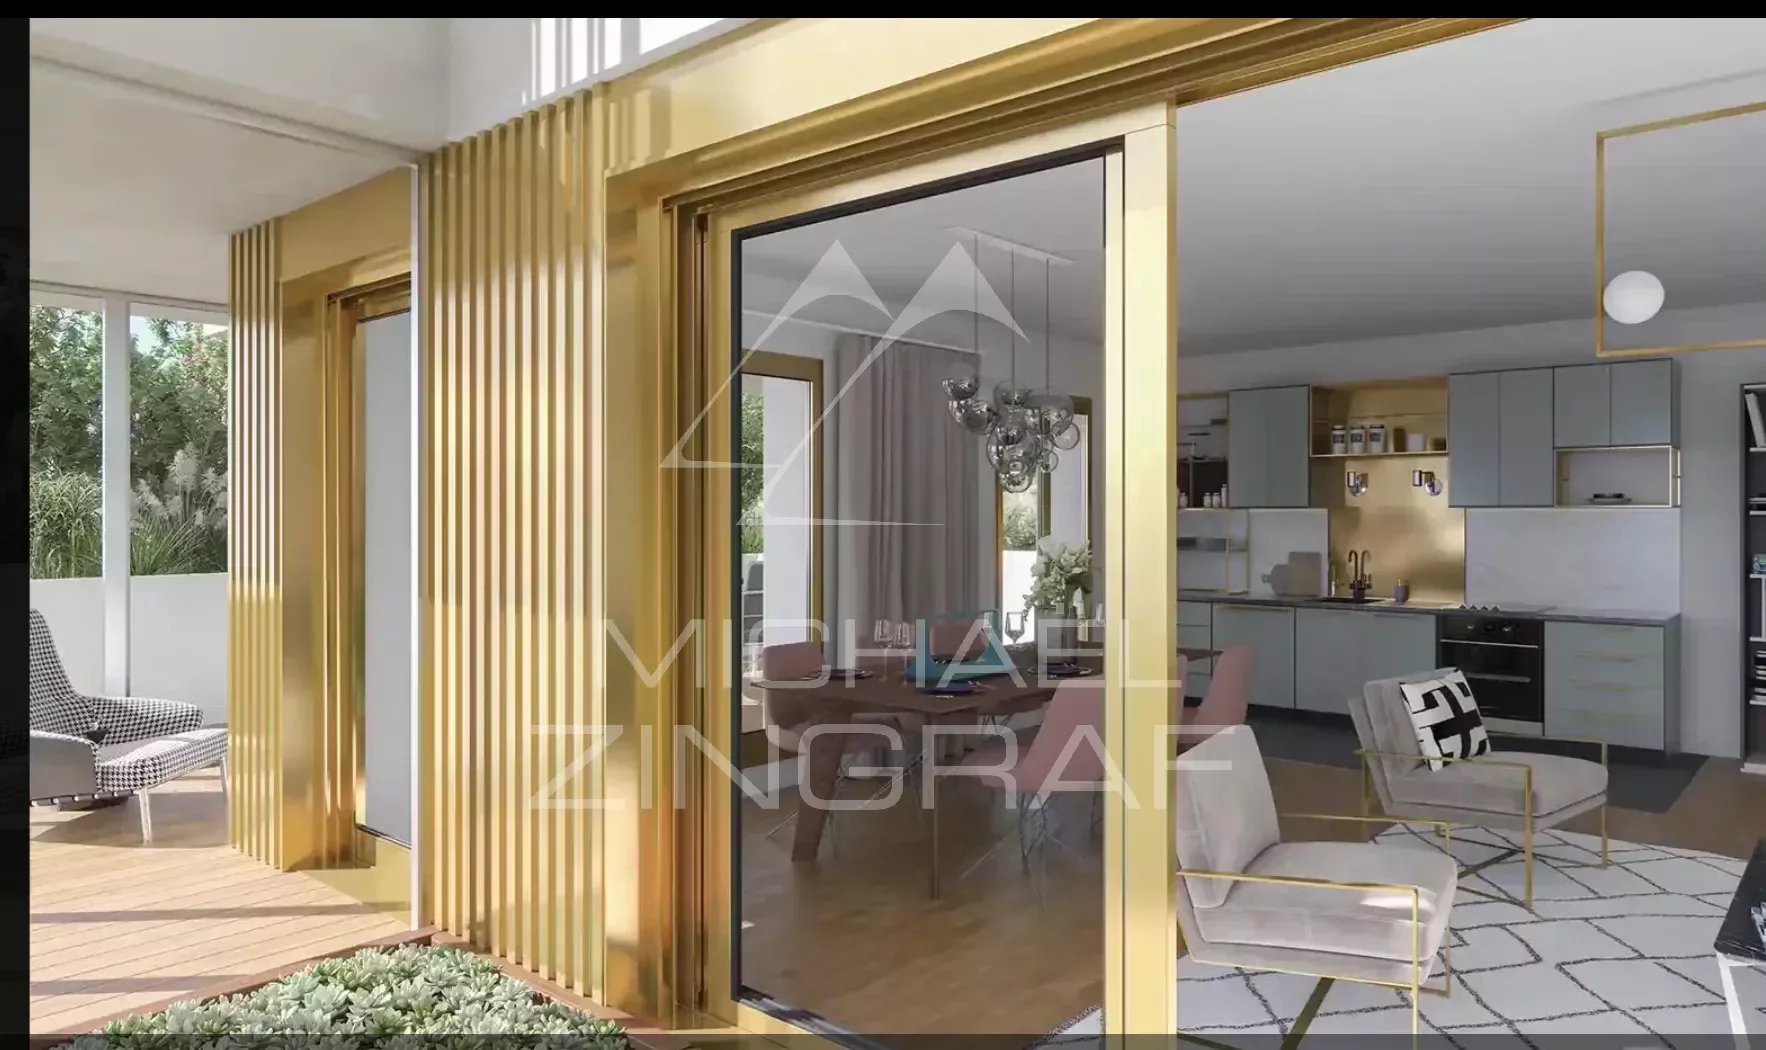 A vendre - Programme Neuf - Appartement Duplex Terrasses 4 chambres - Paris 15